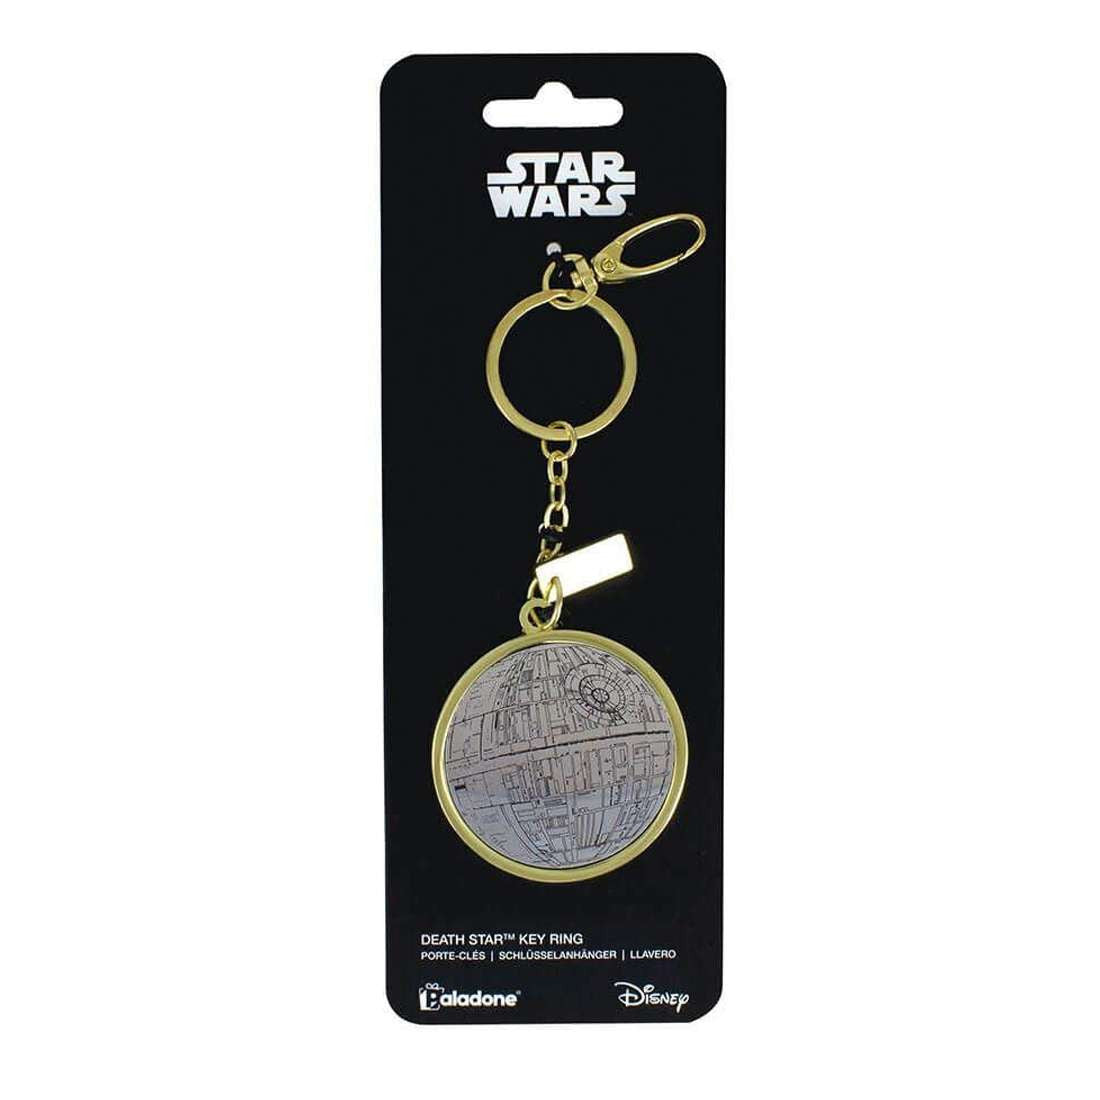 Star Wars keychain - DEATH STAR